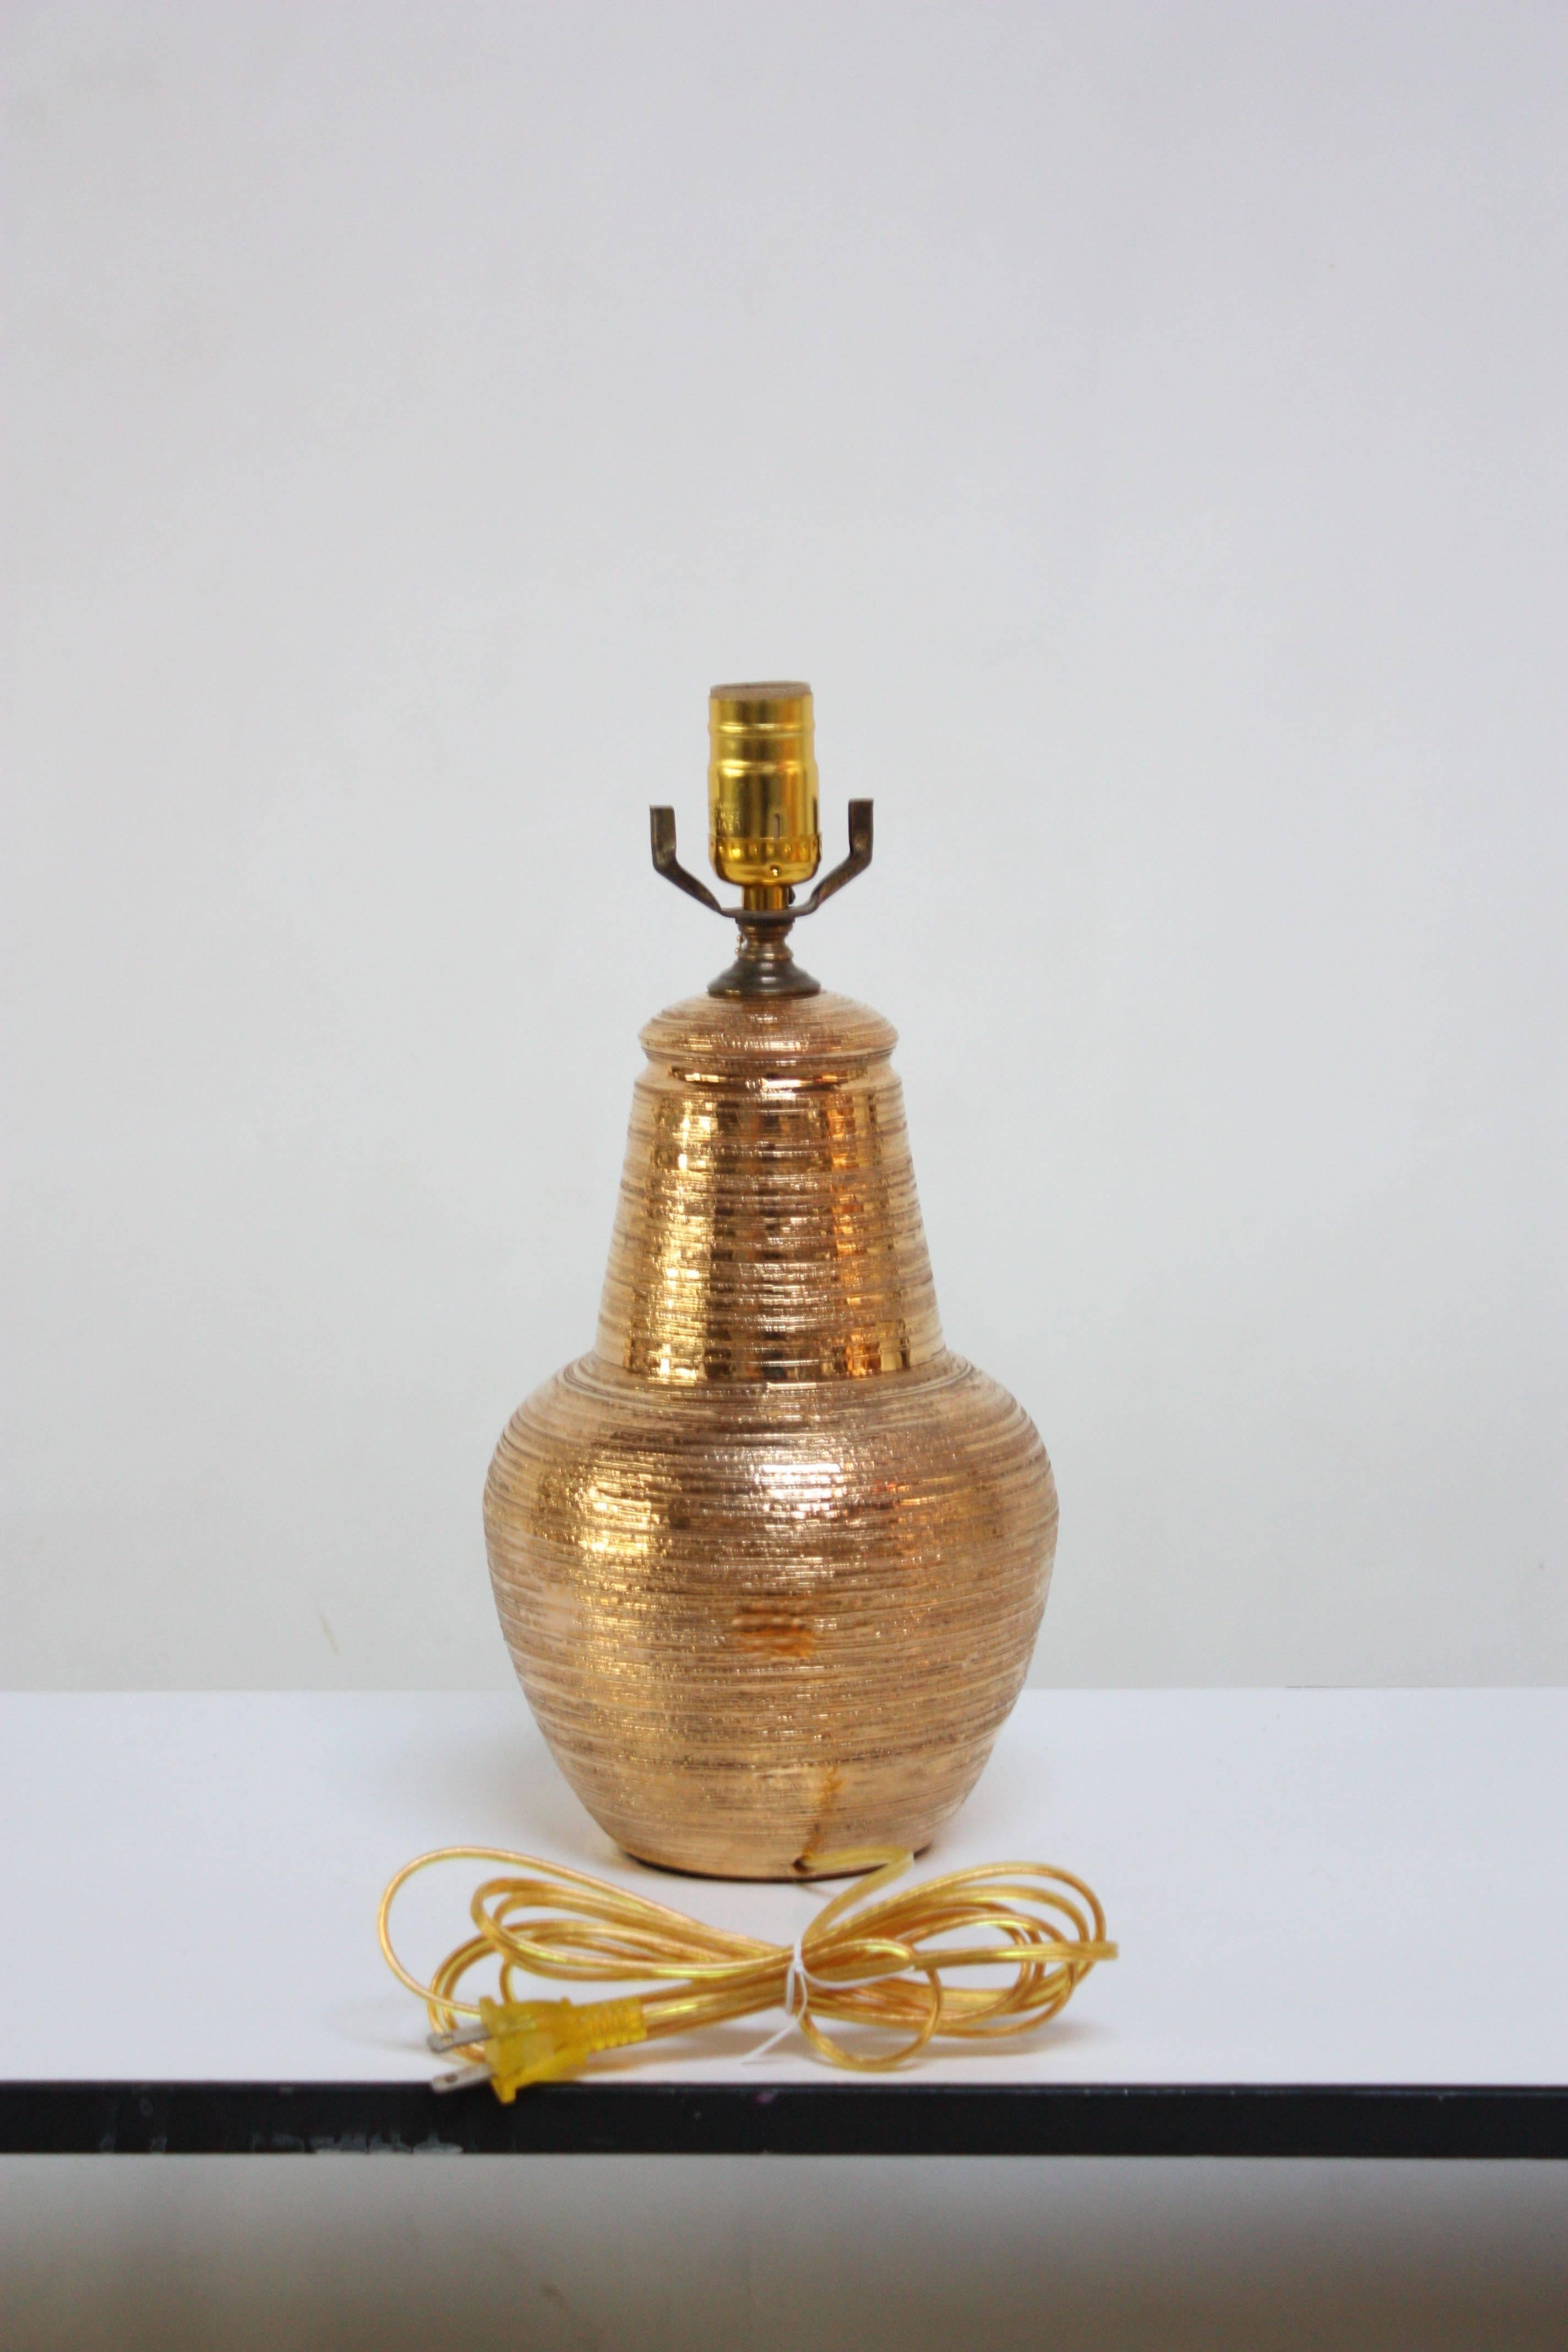 Italienische Tischlampe aus Keramik mit strukturierter Goldglasur. Diese stark strukturierte italienische Keramiklampe weist ein schimmerndes